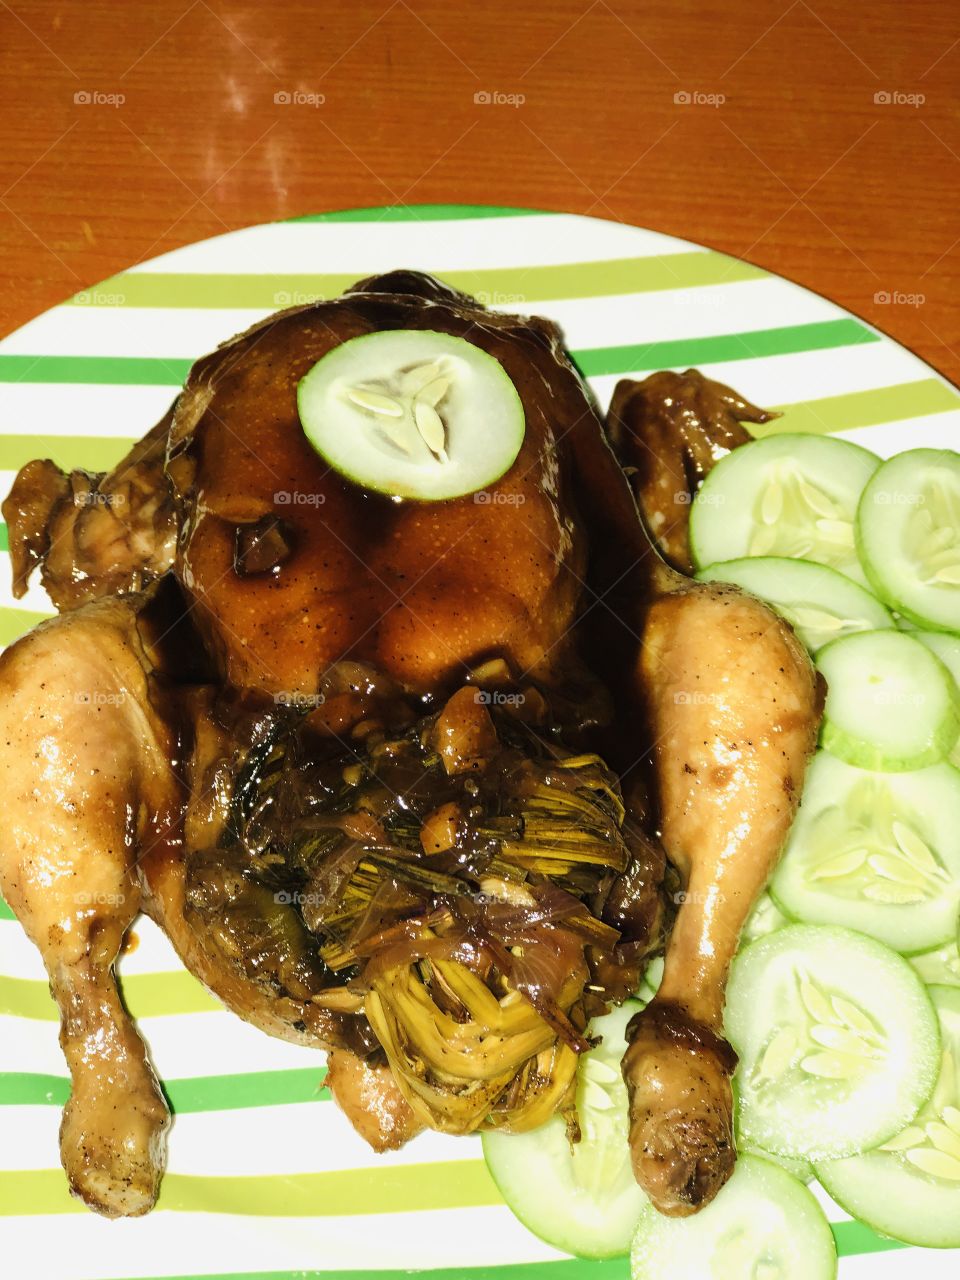 Chicken in sprite! 😋